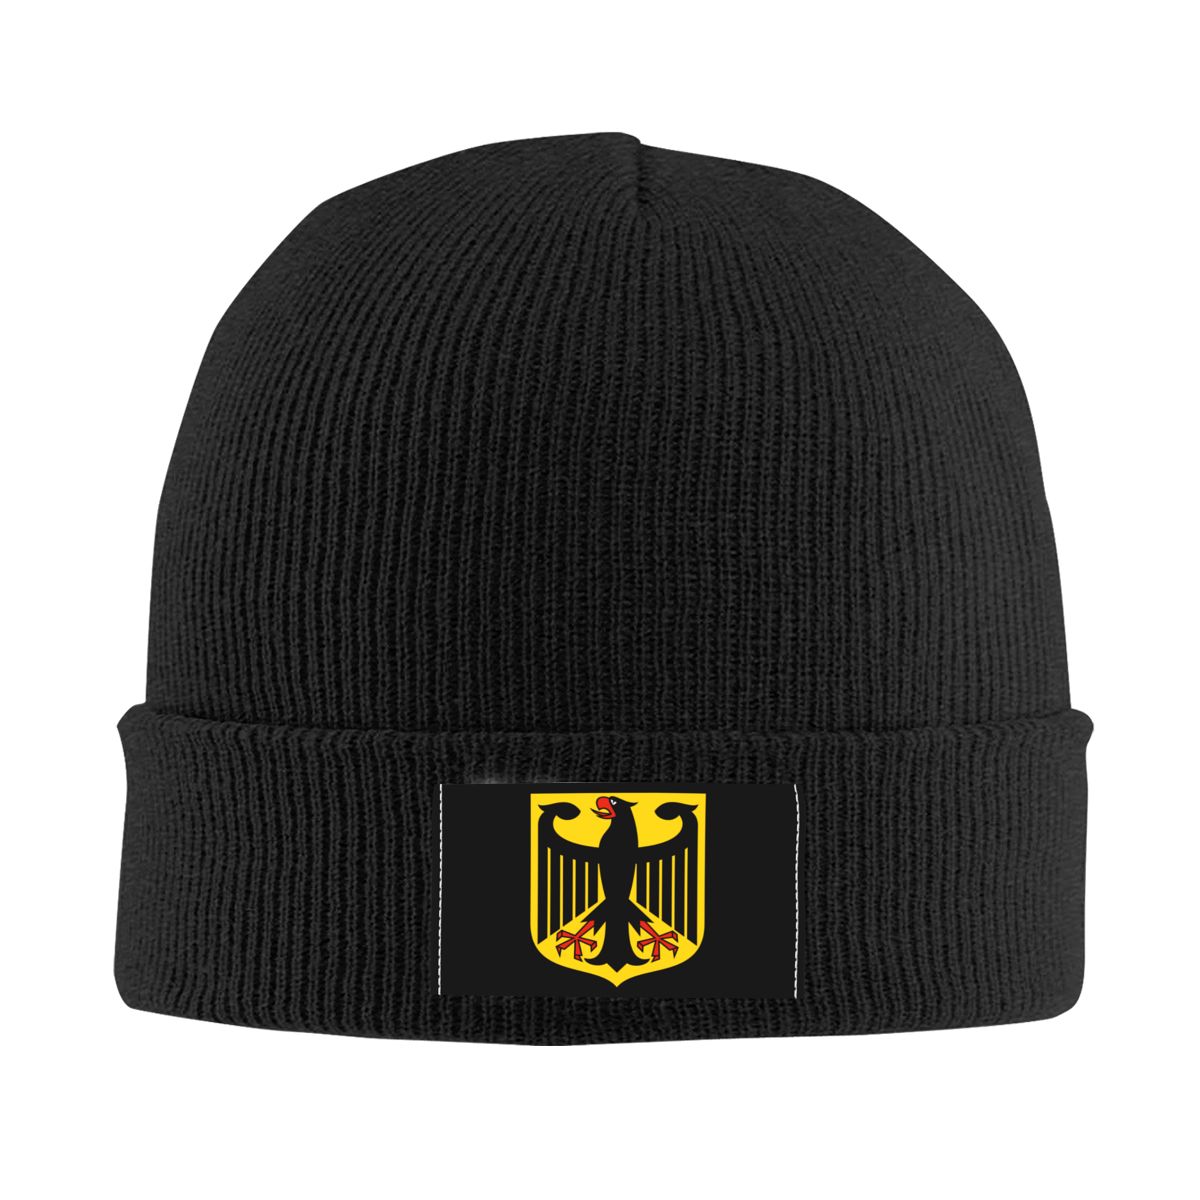 독일 국장 보닛 모자, 니트 모자, 남성 및 여성용 패션, 유니섹스, 성인 독일 국기, 독수리, 겨울용 따뜻한 스컬리 비니 모자